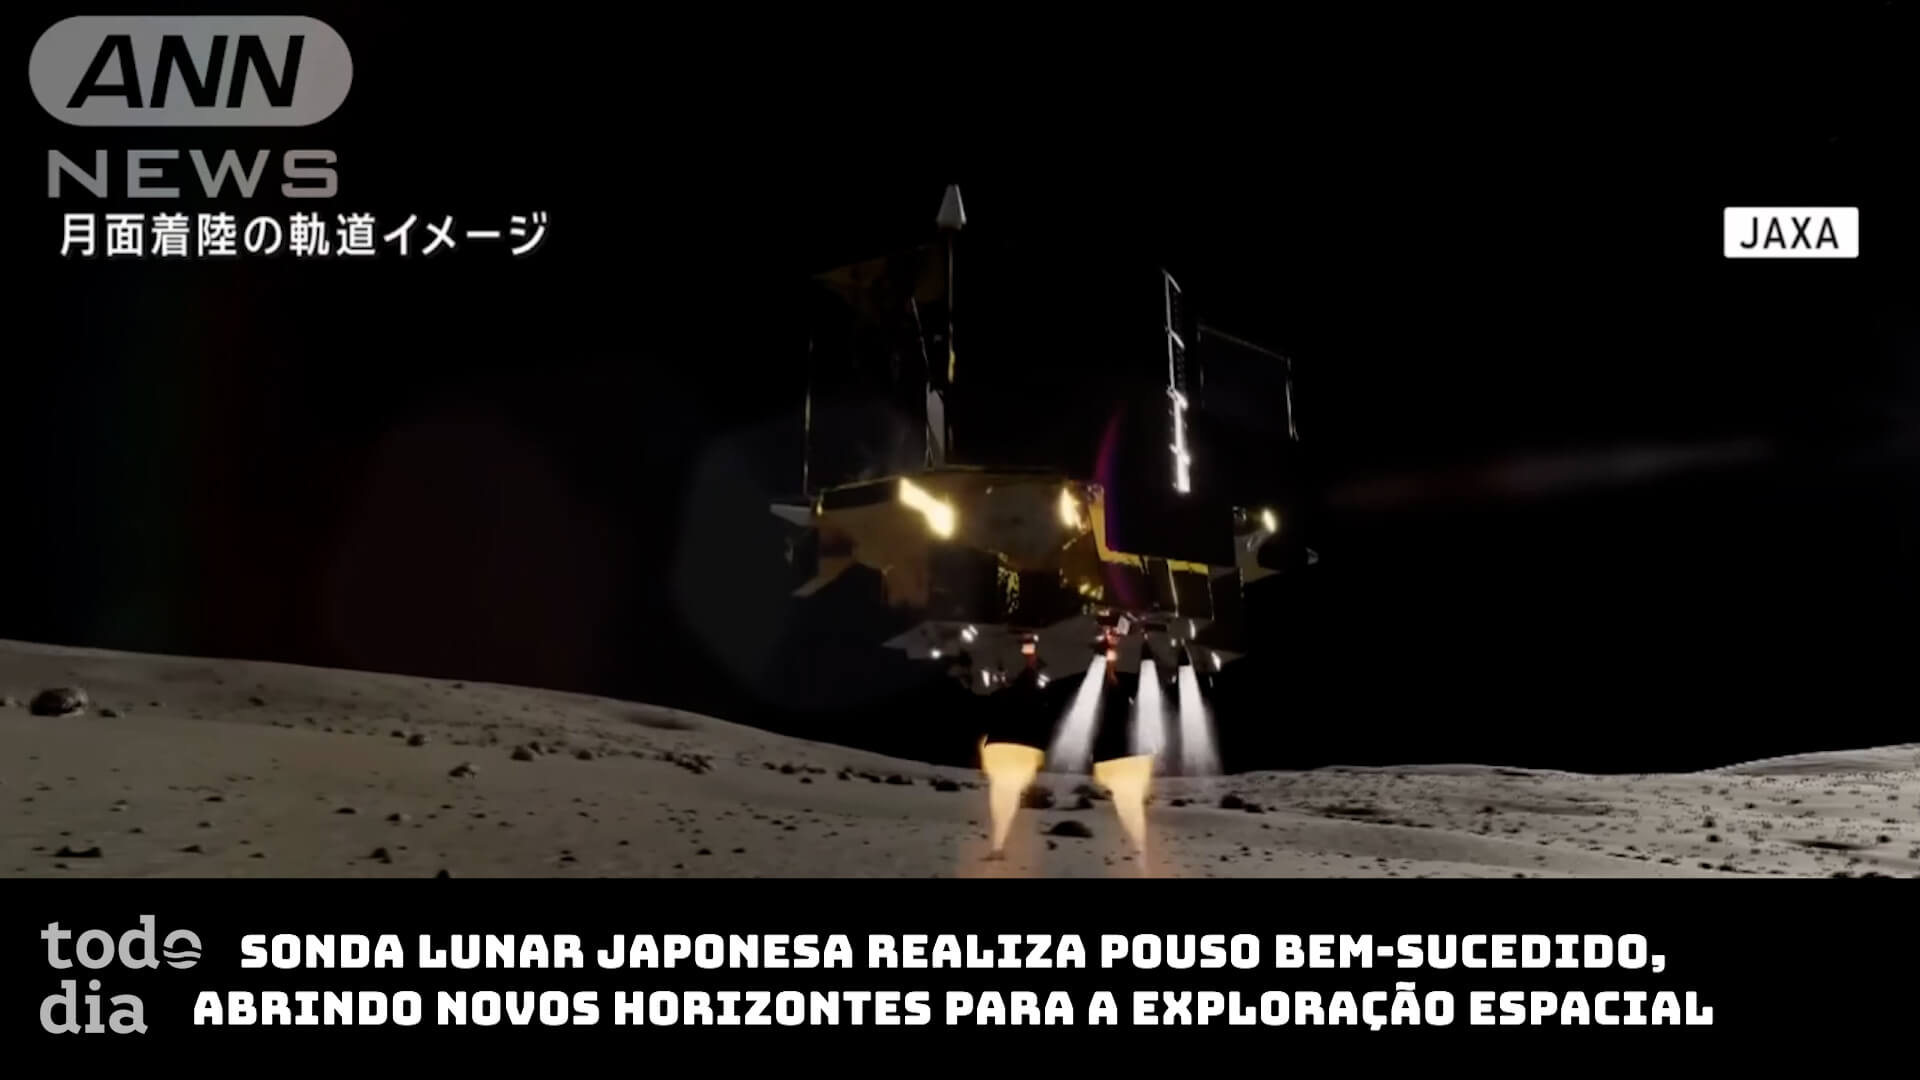 Sonda lunar japonesa realiza pouso bem-sucedido, abrindo novos horizontes para a exploração espacial 